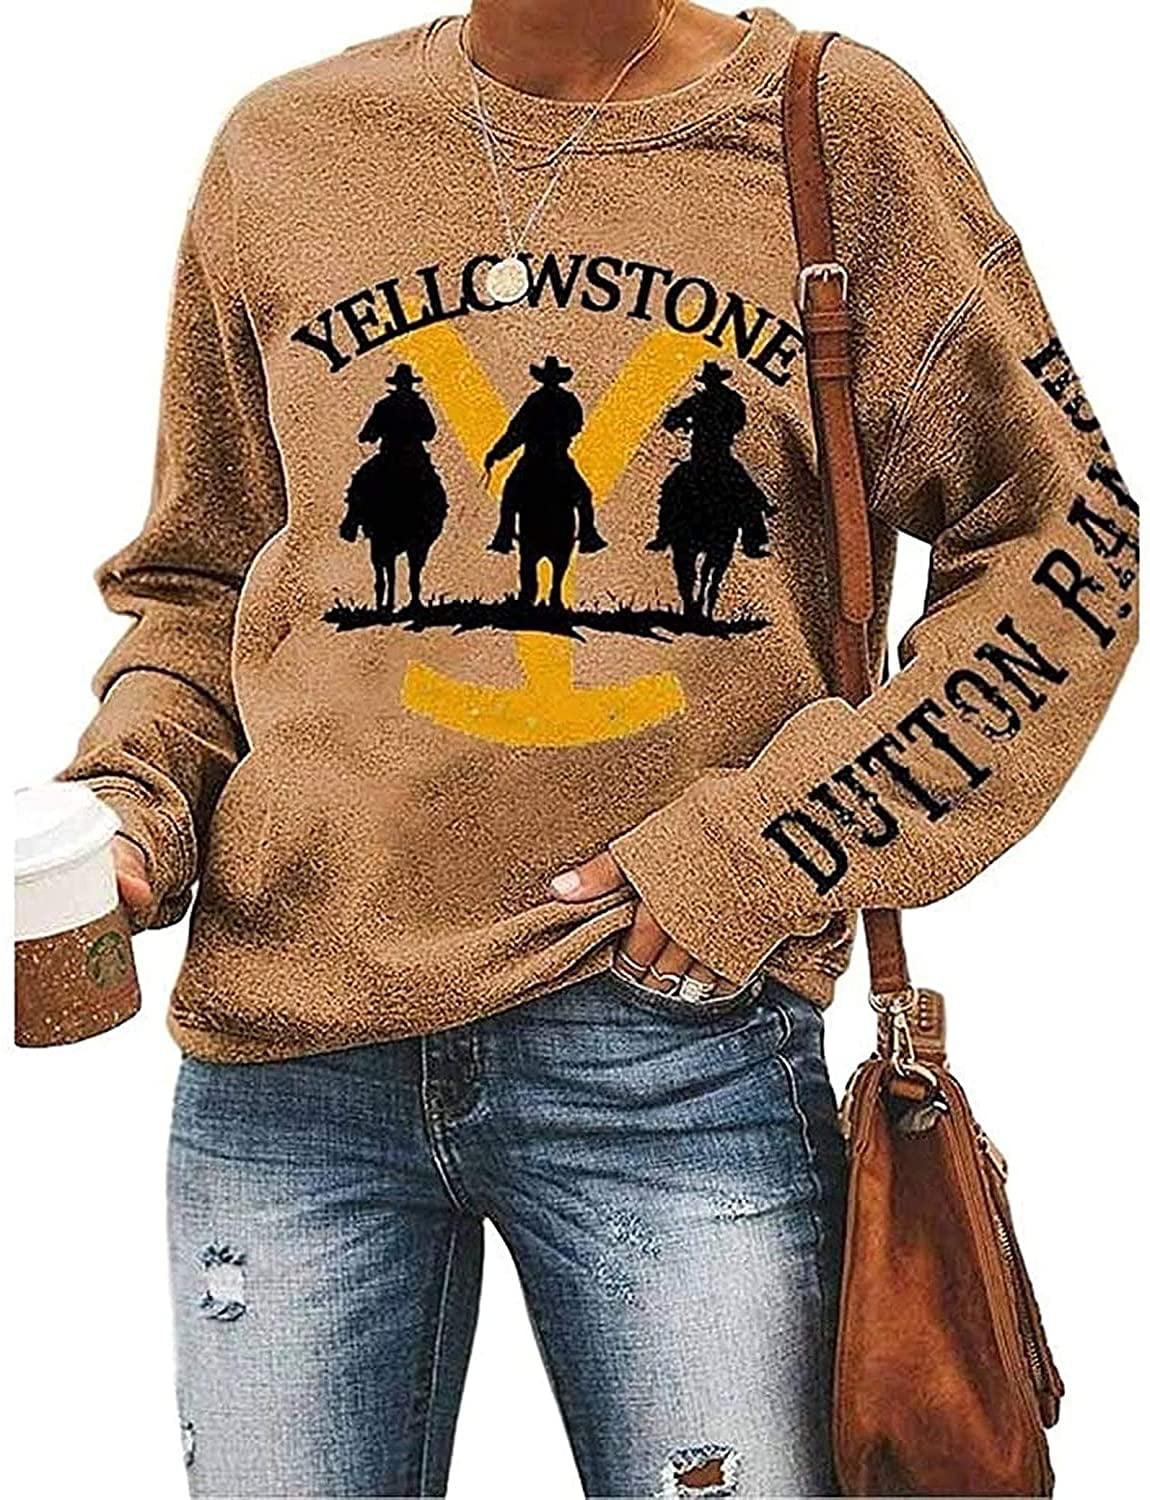 SiLing Women Sorta Beth Dutton Shirt Casual Tops Graphic Tee Shirts Fall Shirt